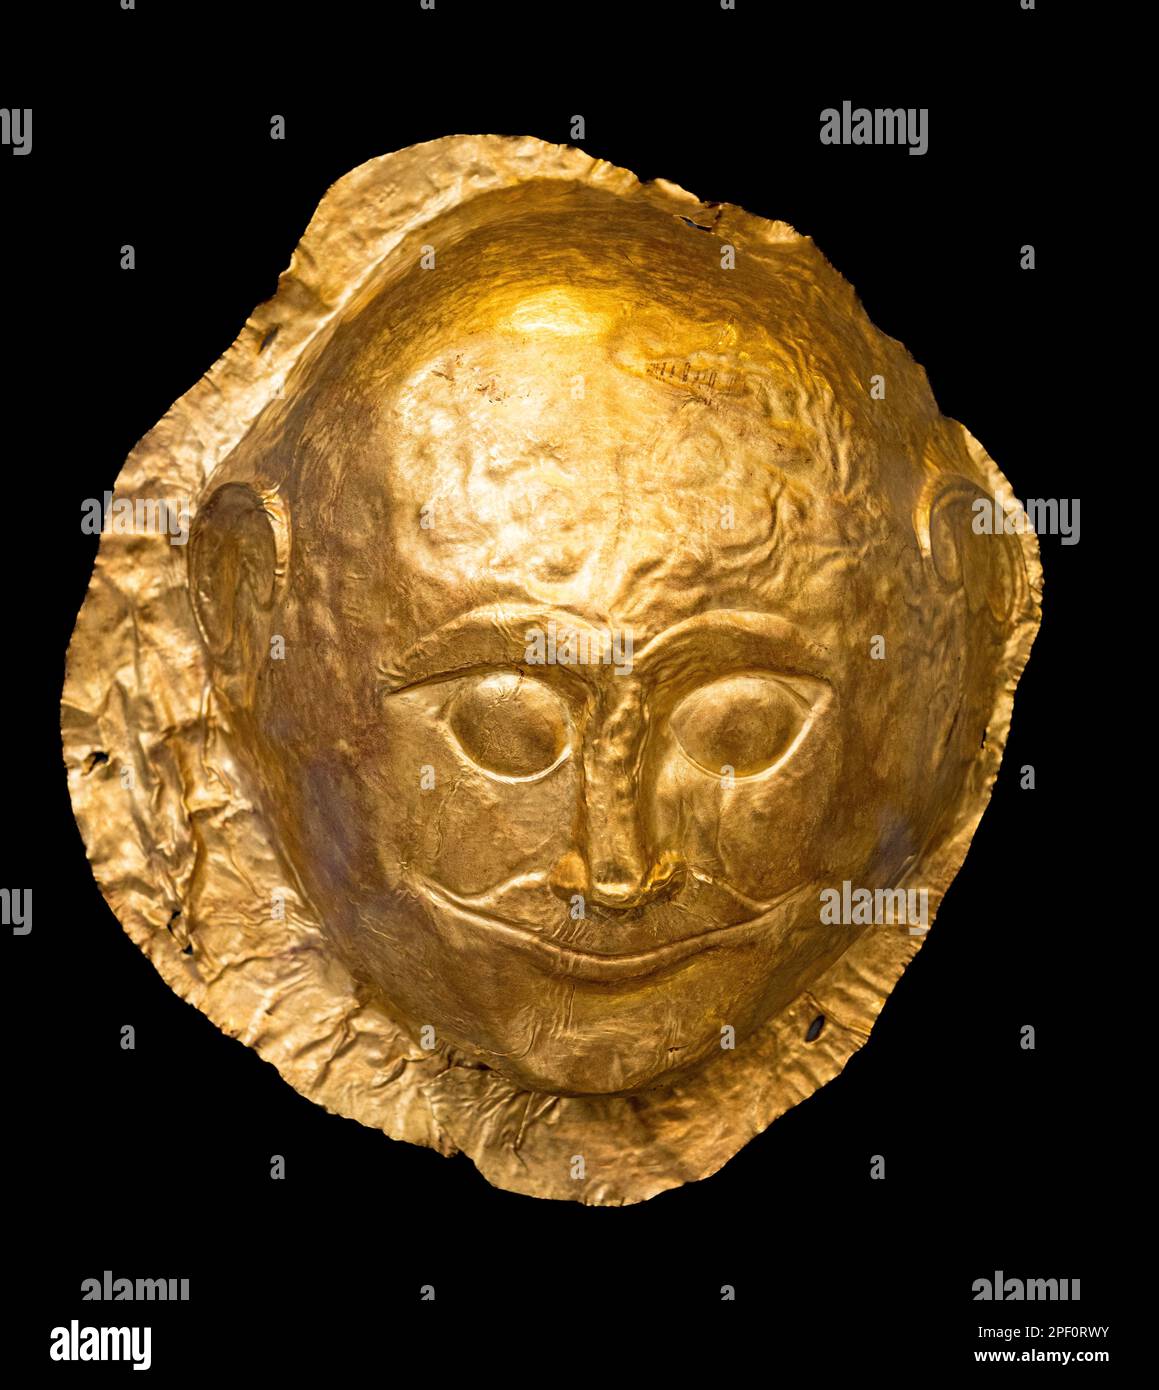 Un masque funéraire en or datant de 16th ans avant J.-C. de la tombe IV du cercle grave A à l'ancienne Mycènes, Péloponnèse, Grèce. Banque D'Images